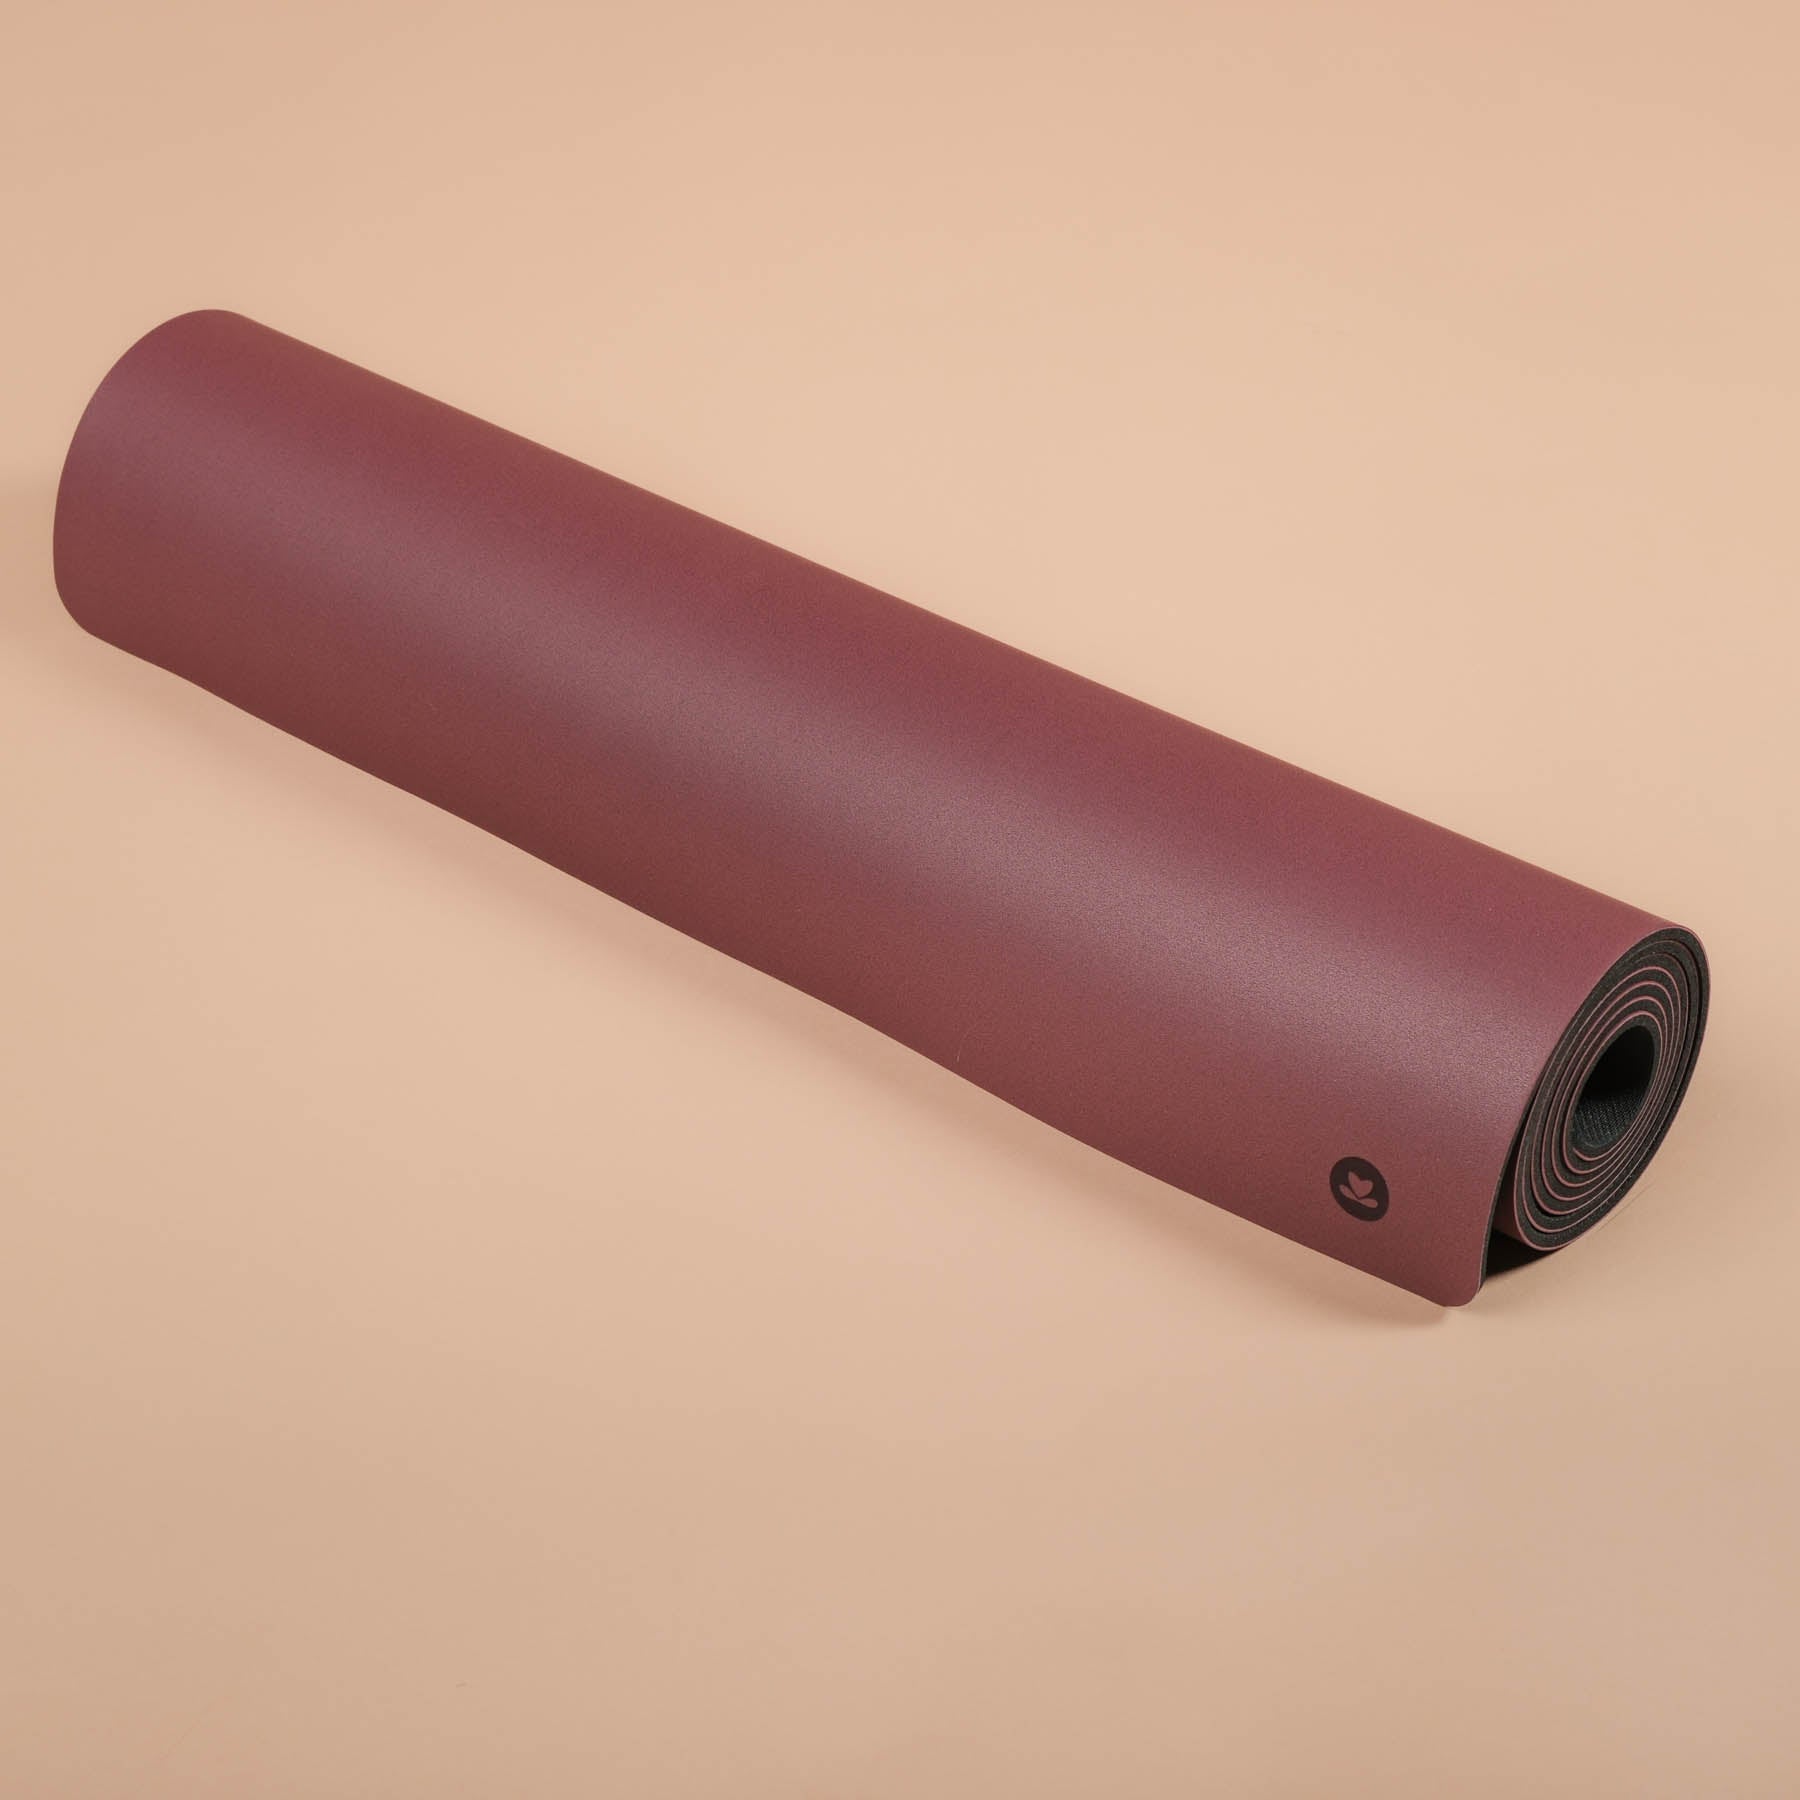 Tapis de yoga SuperGrip très antidérapant en caoutchouc naturel durable dans la couleur berry